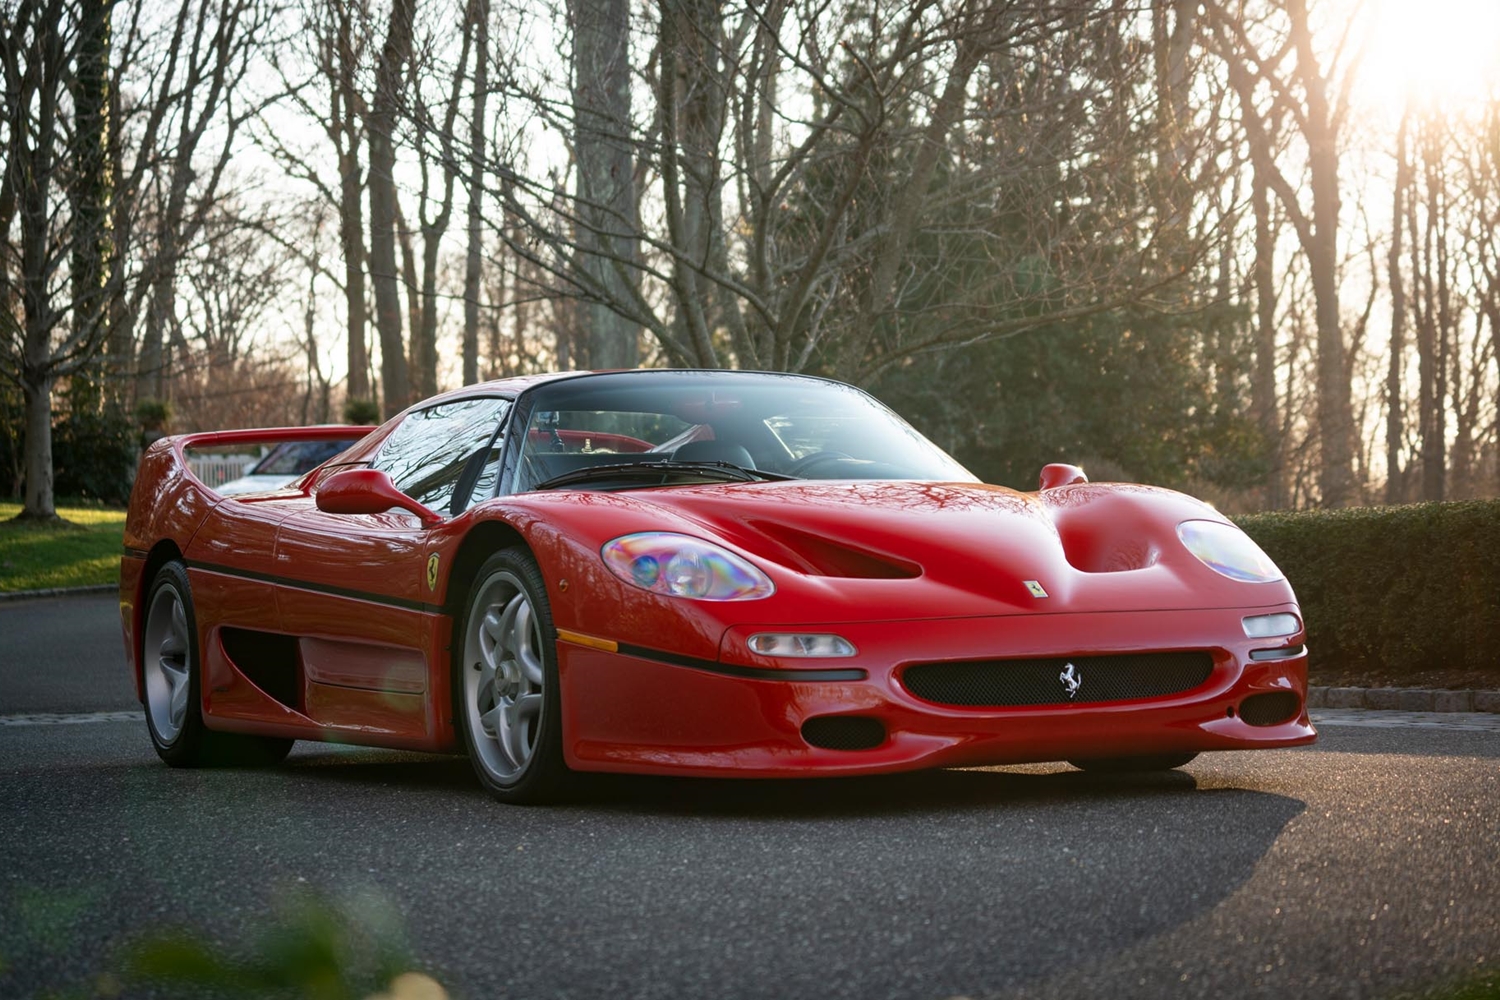 Címlapsztár ez a Ferrari F50-es 7